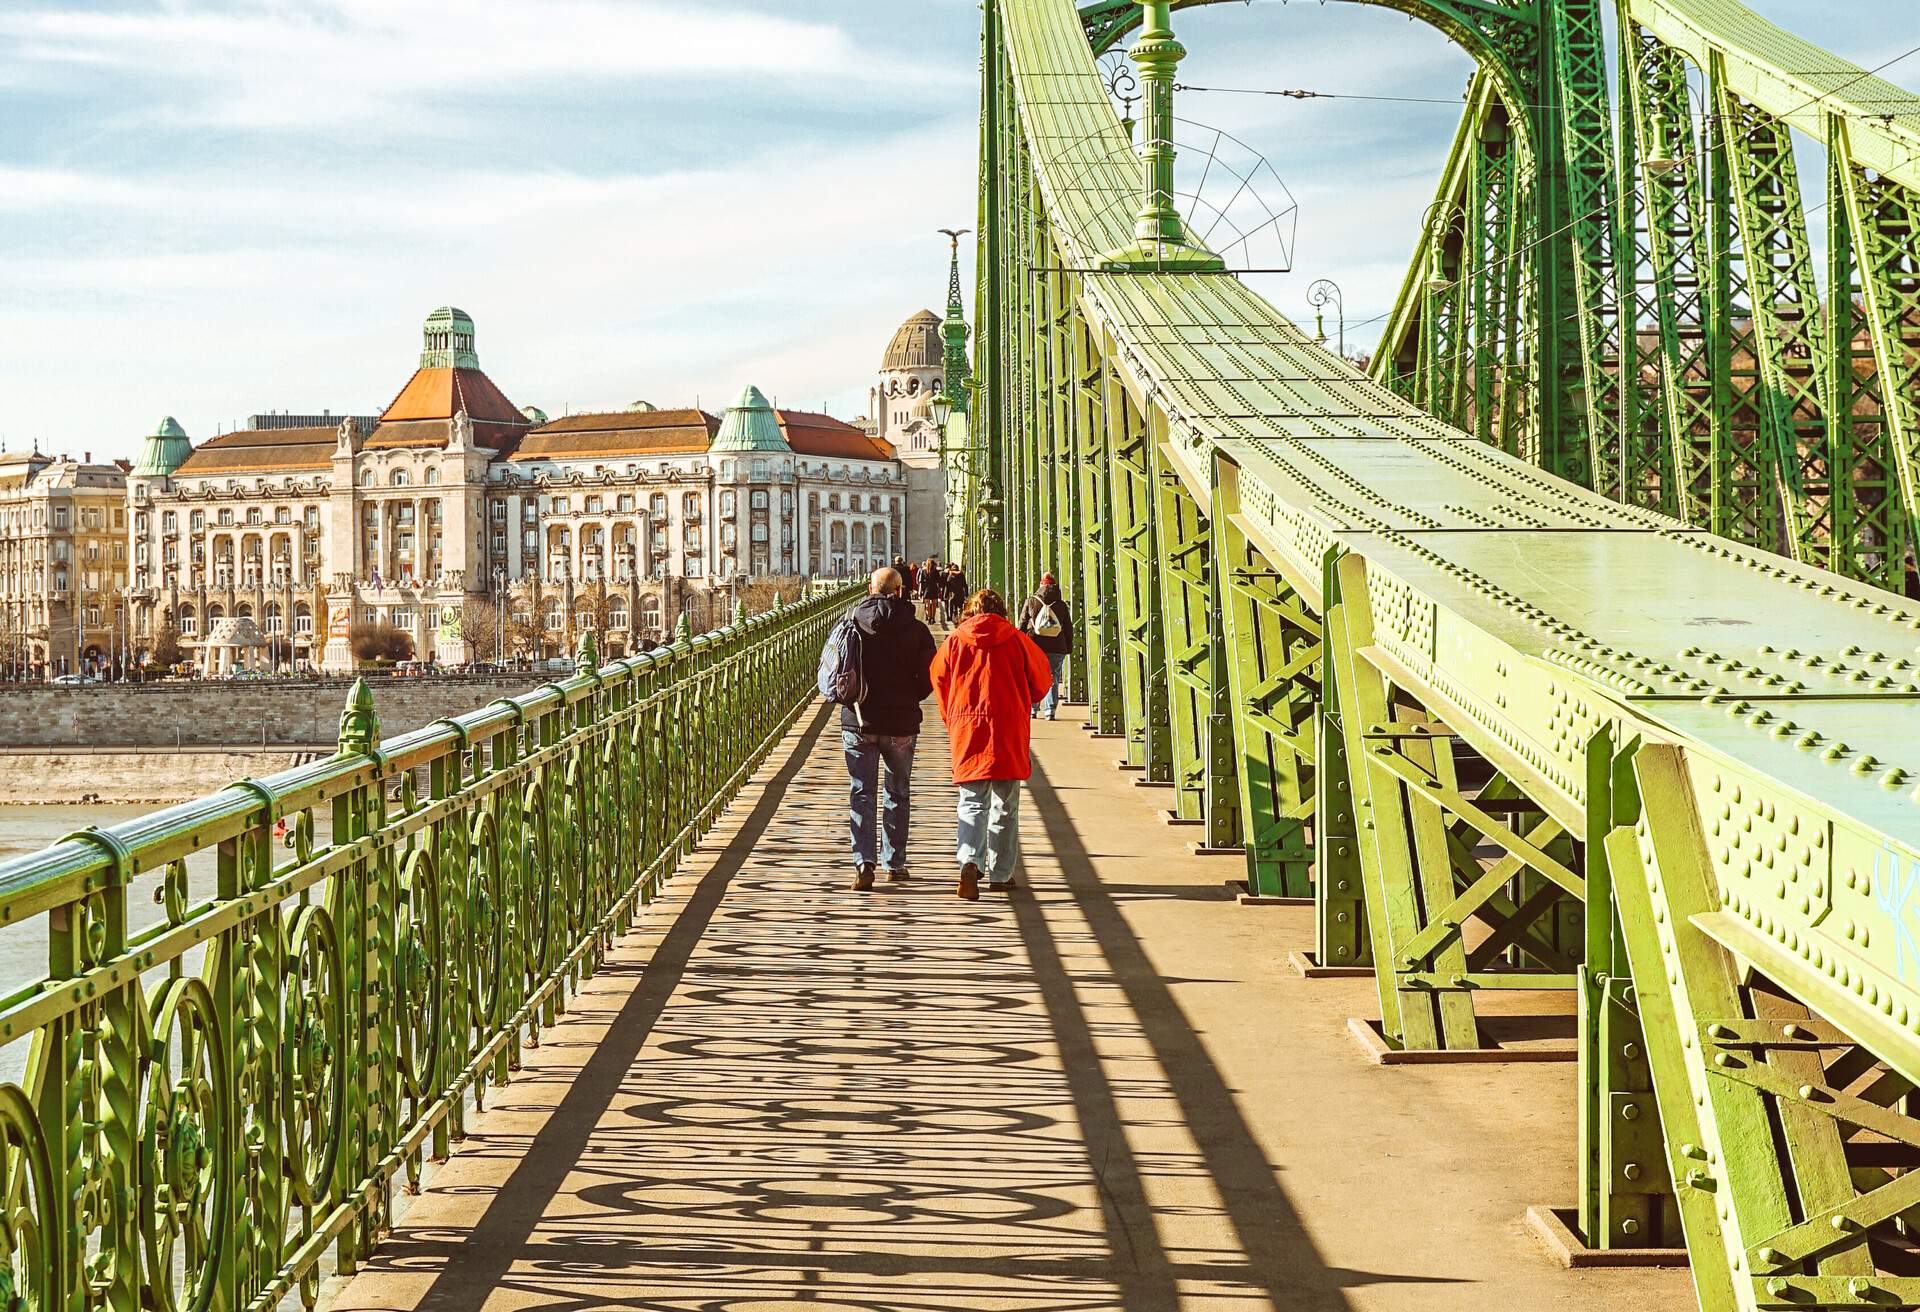 A pedestrian bridge with people walking across it.